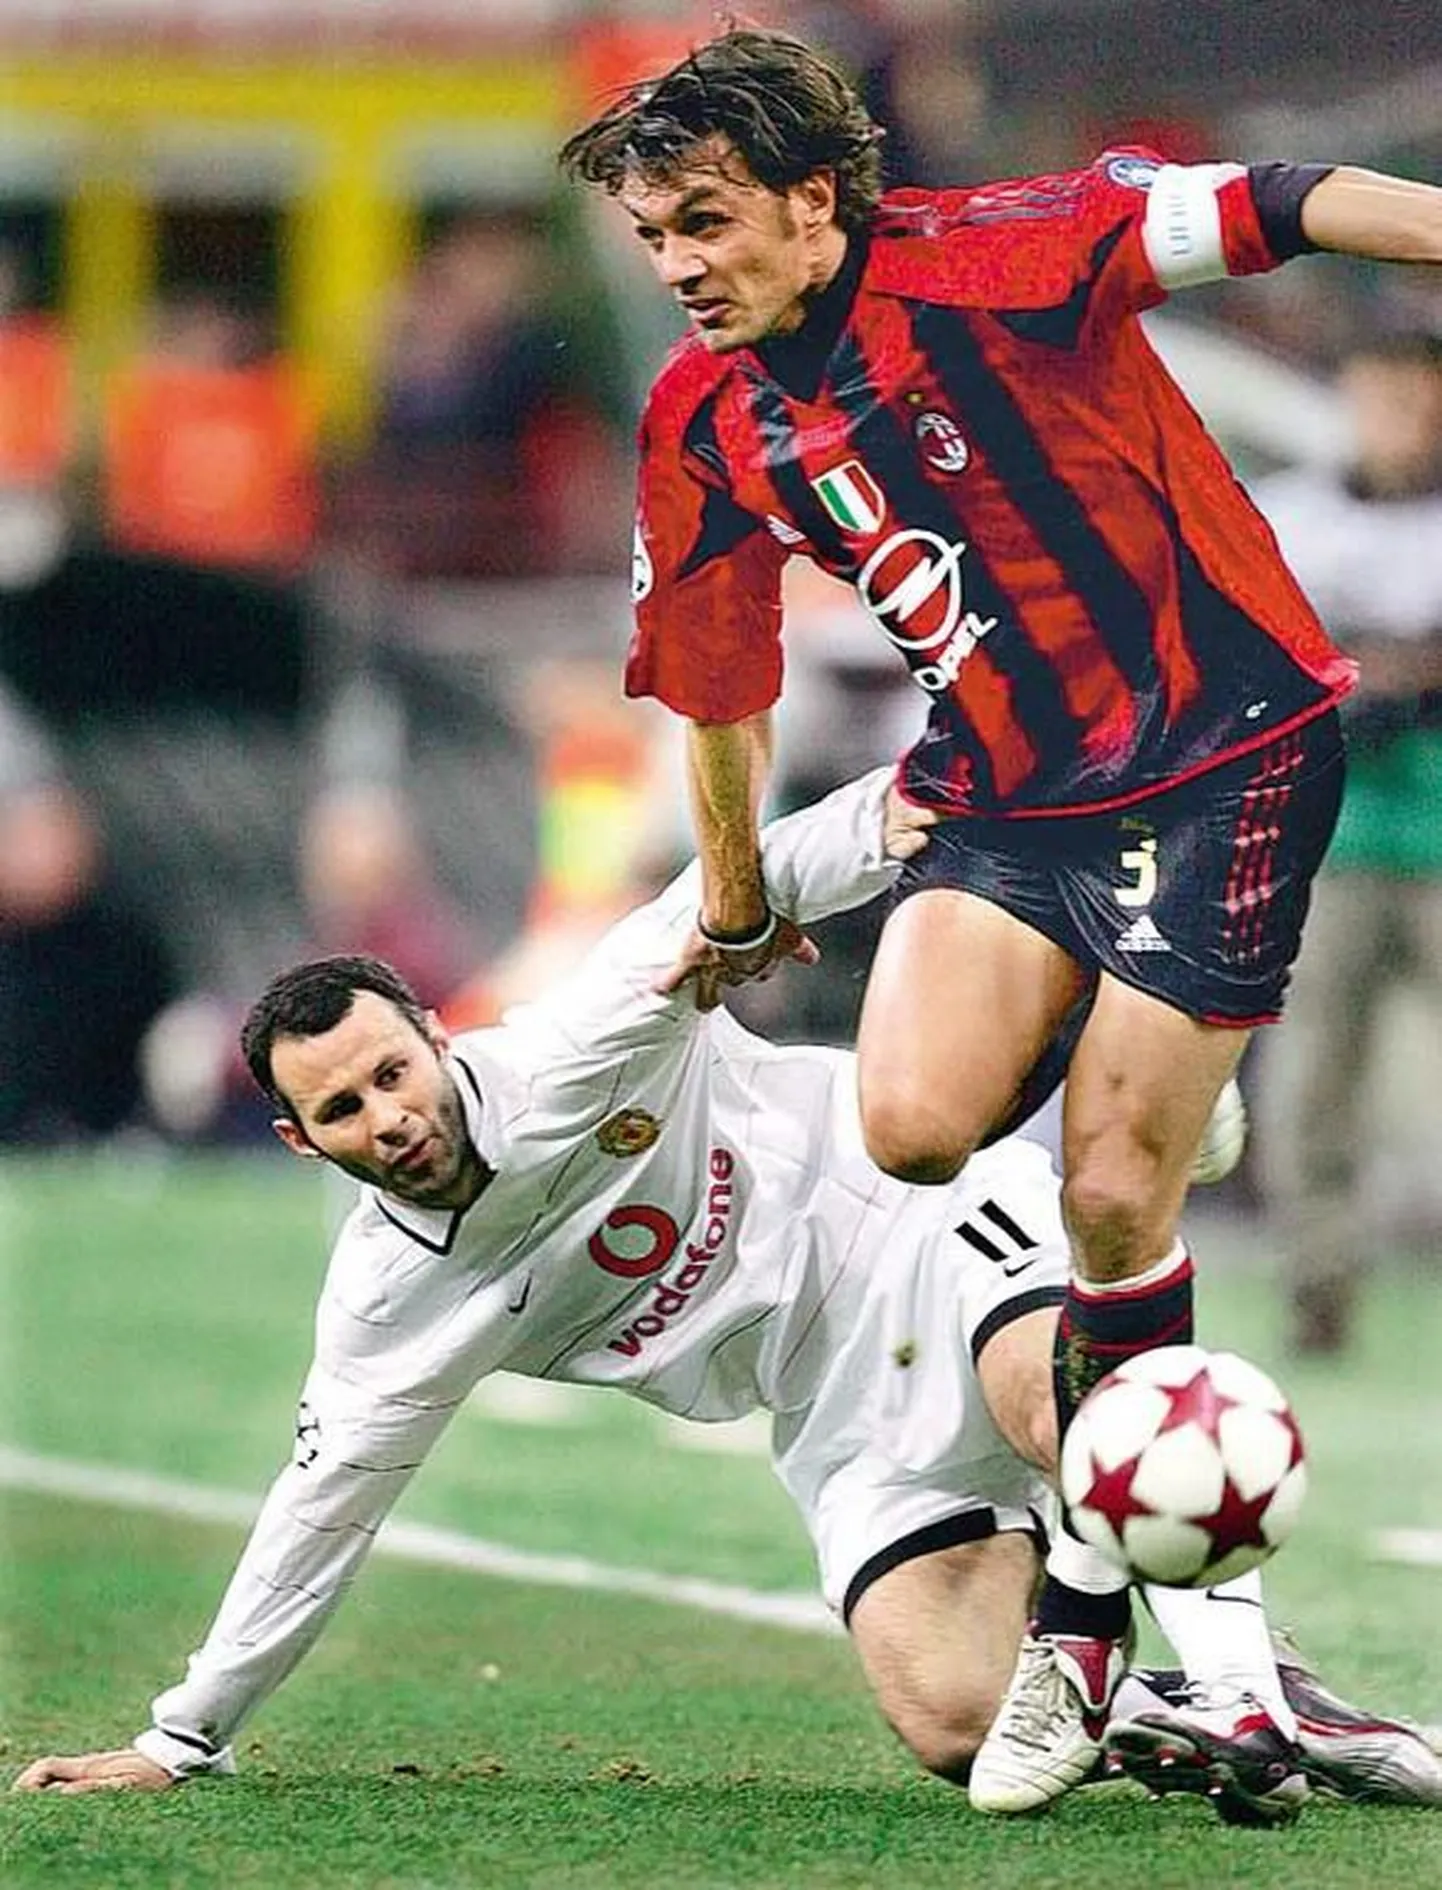 Itaallane Paolo Maldini paistab silma harvanähtava klubitruudusega  ta on kaitsnud superklubi AC Milan värve viimased kakskümmend aastat.